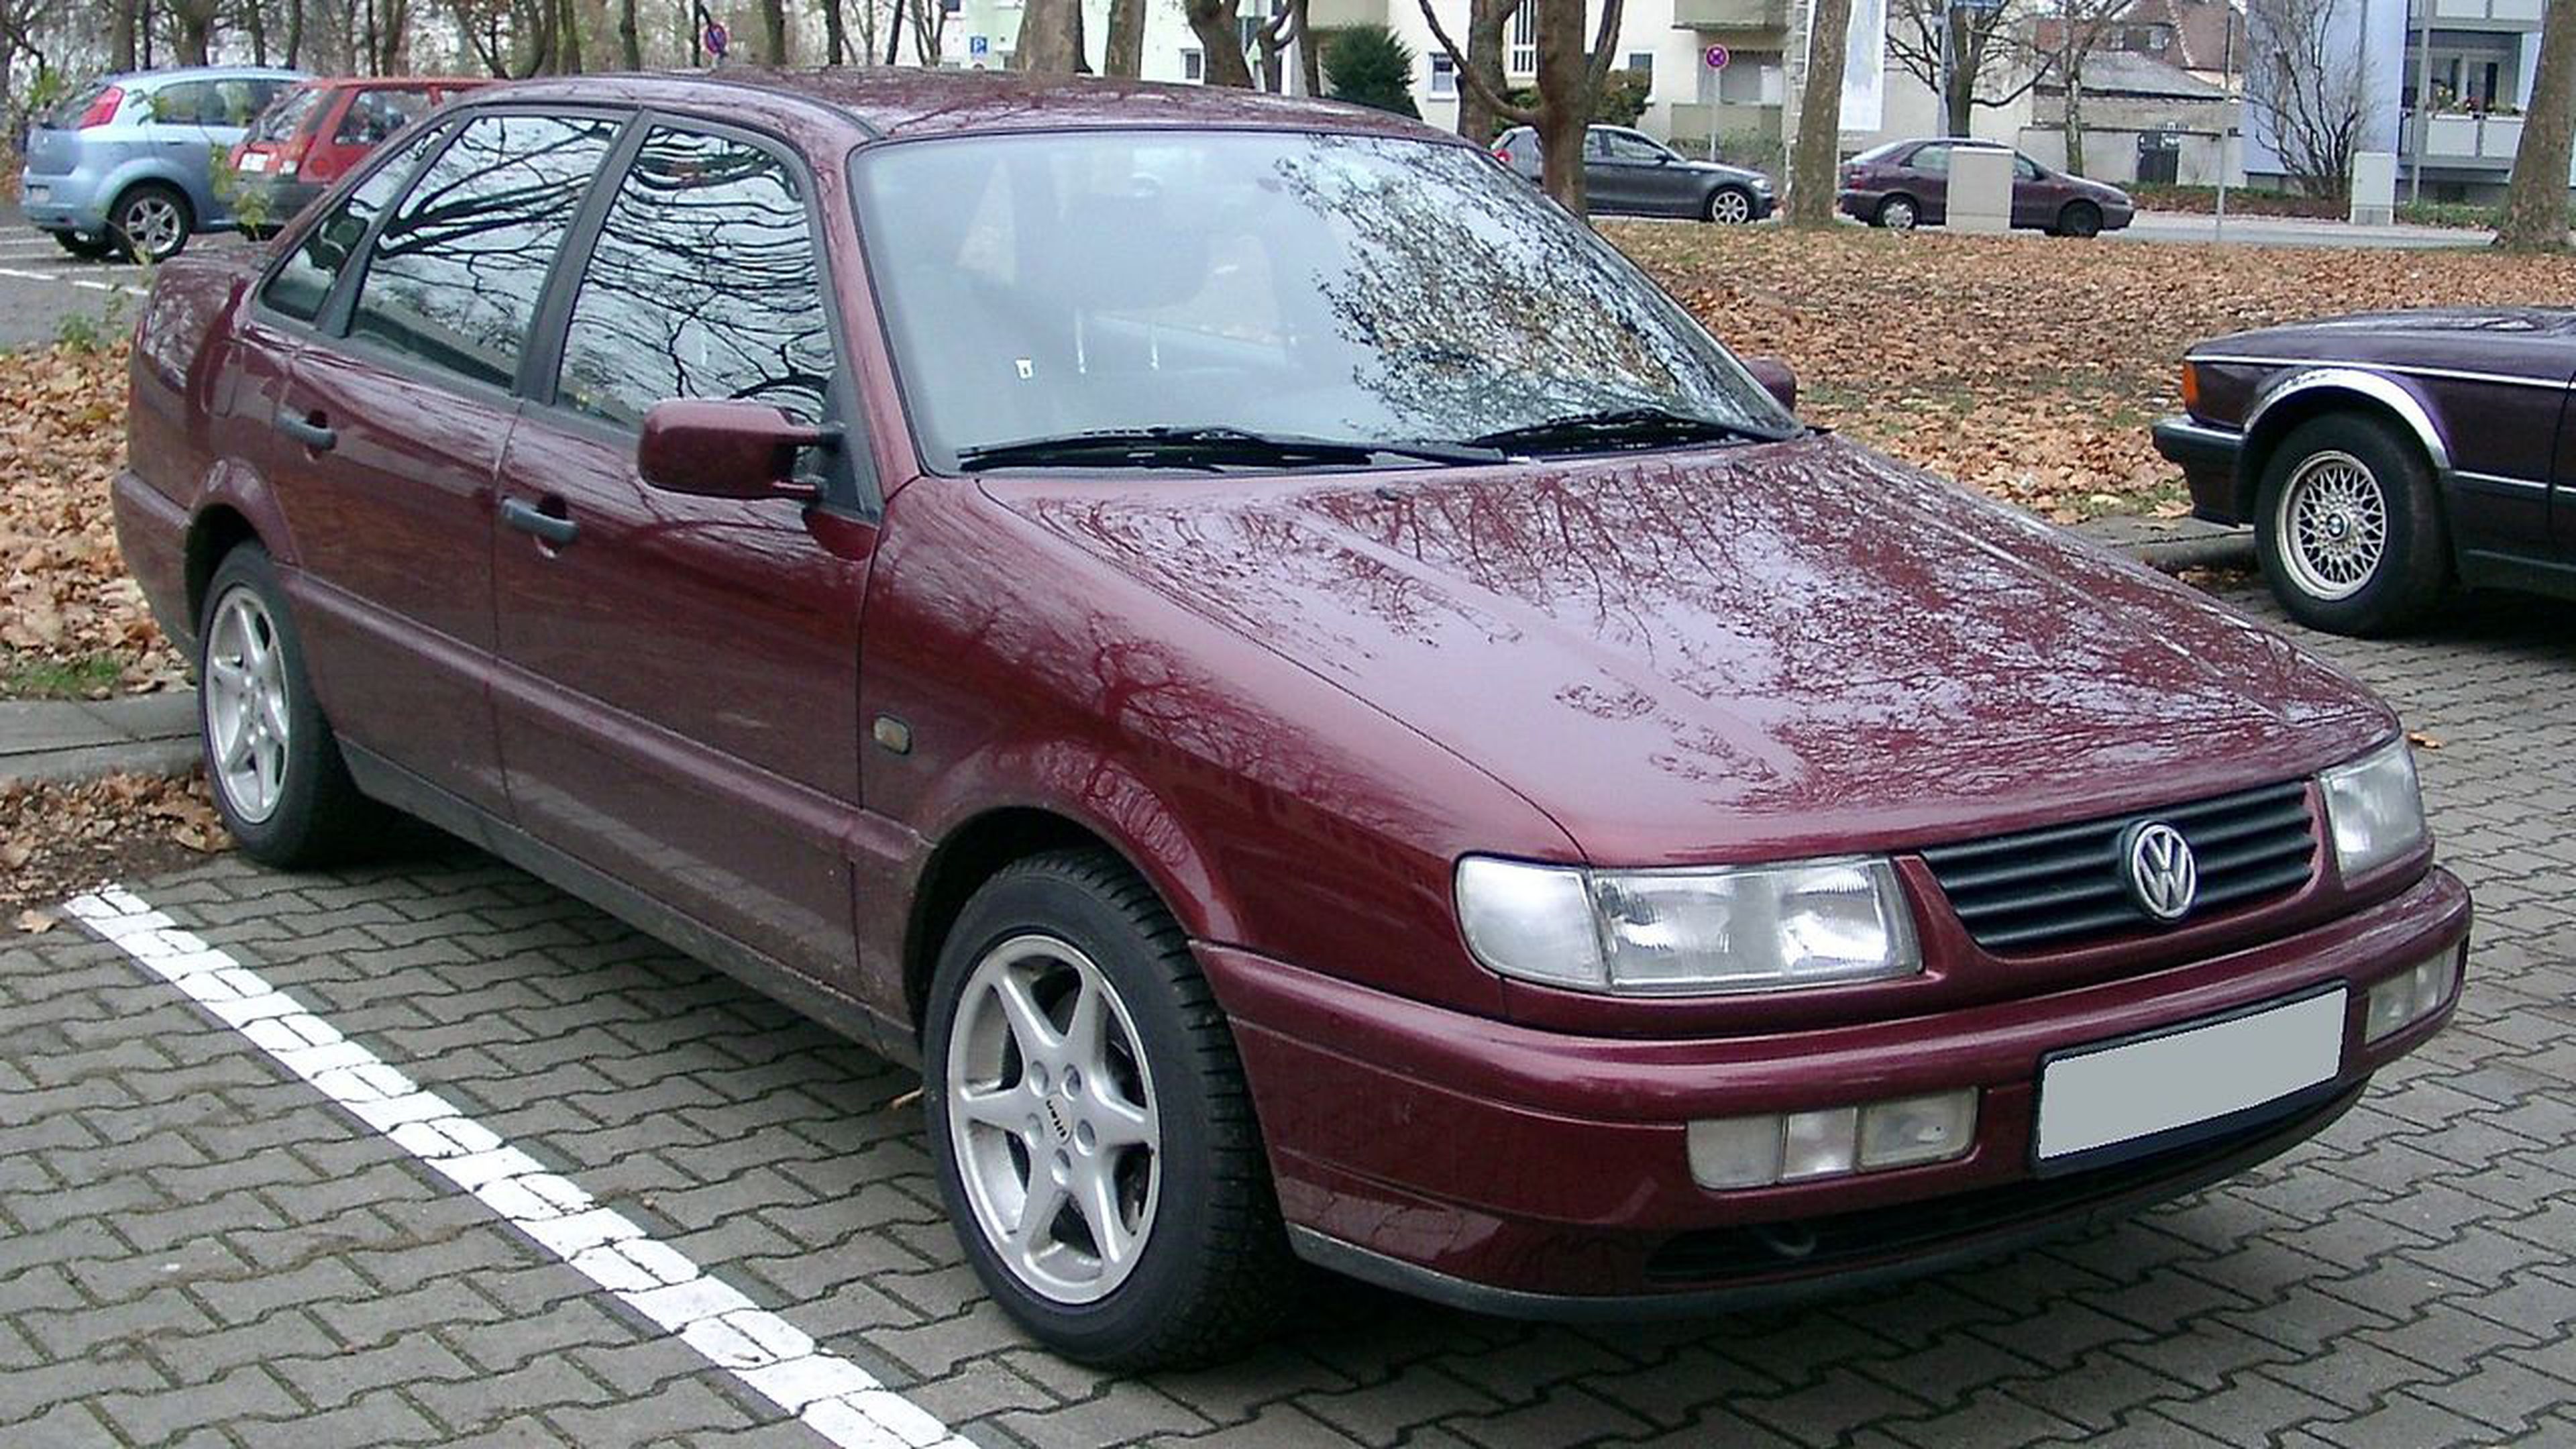 Volkswagen Passat B4